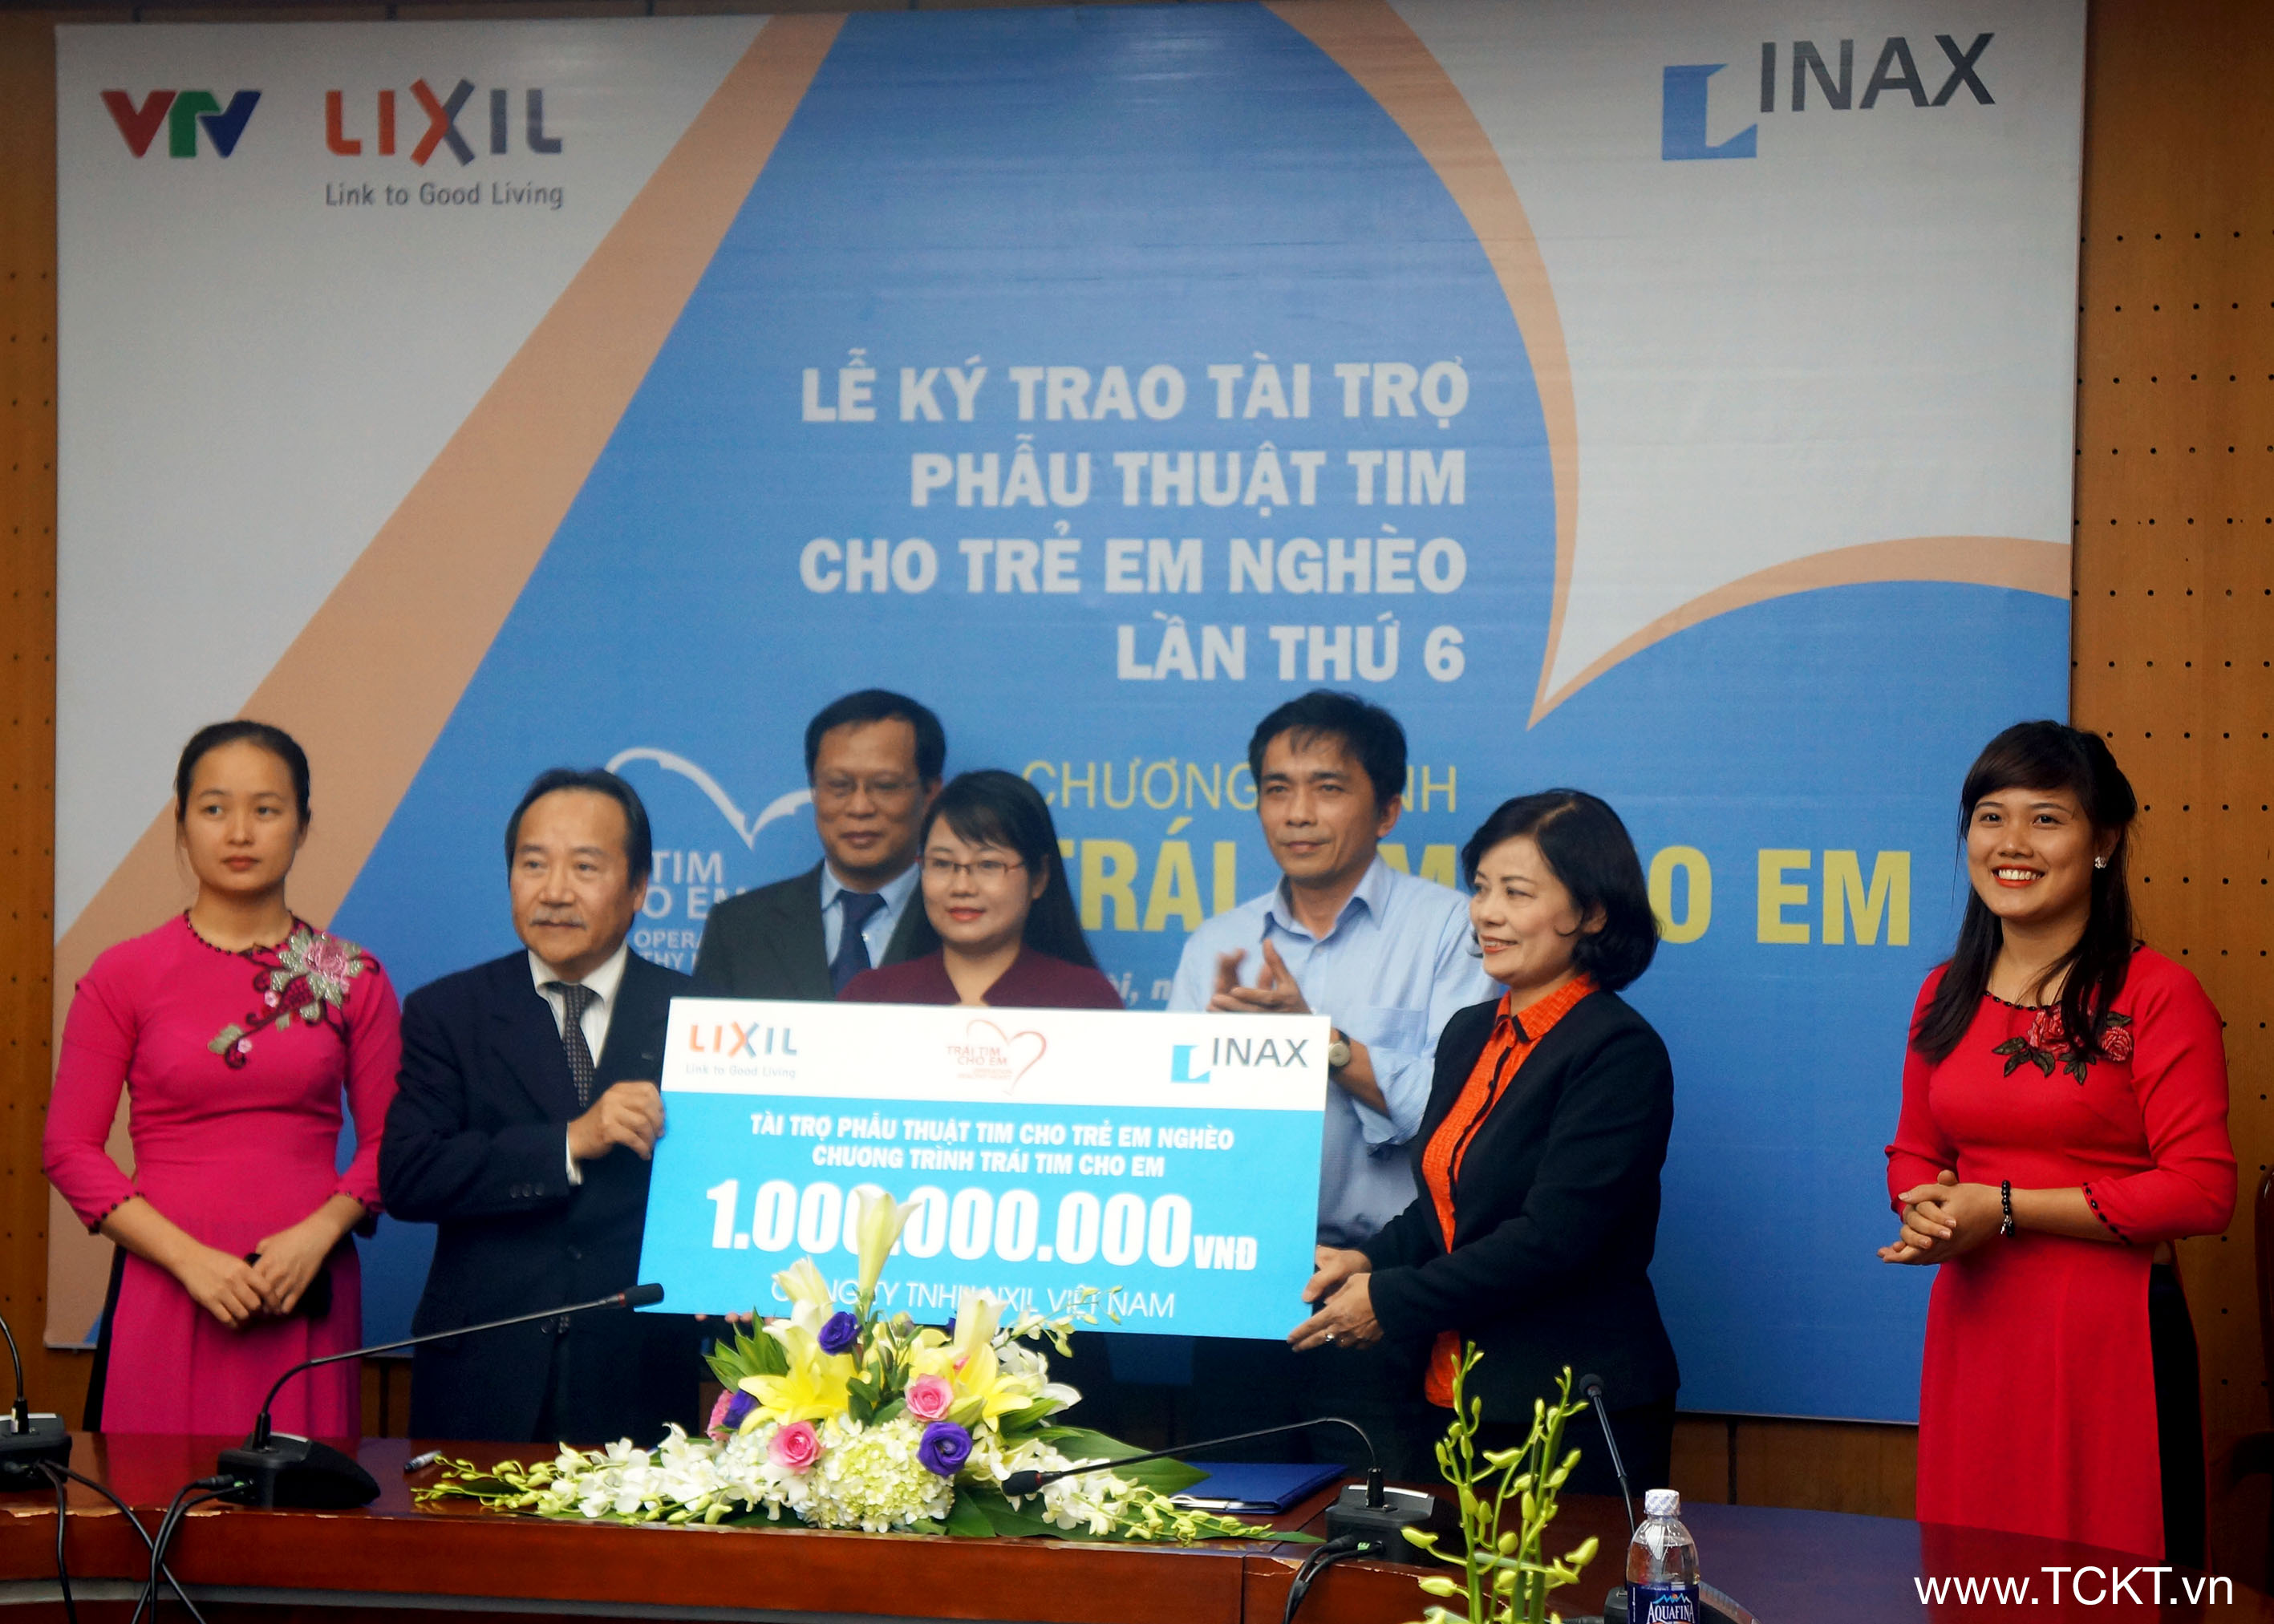 Trao tượng trưng số tiền mà Công ty LIXIL VIệt Nam ủng hộ phẫu thuật tim cho trẻ em nghèo trong chương trình Trái tim cho em